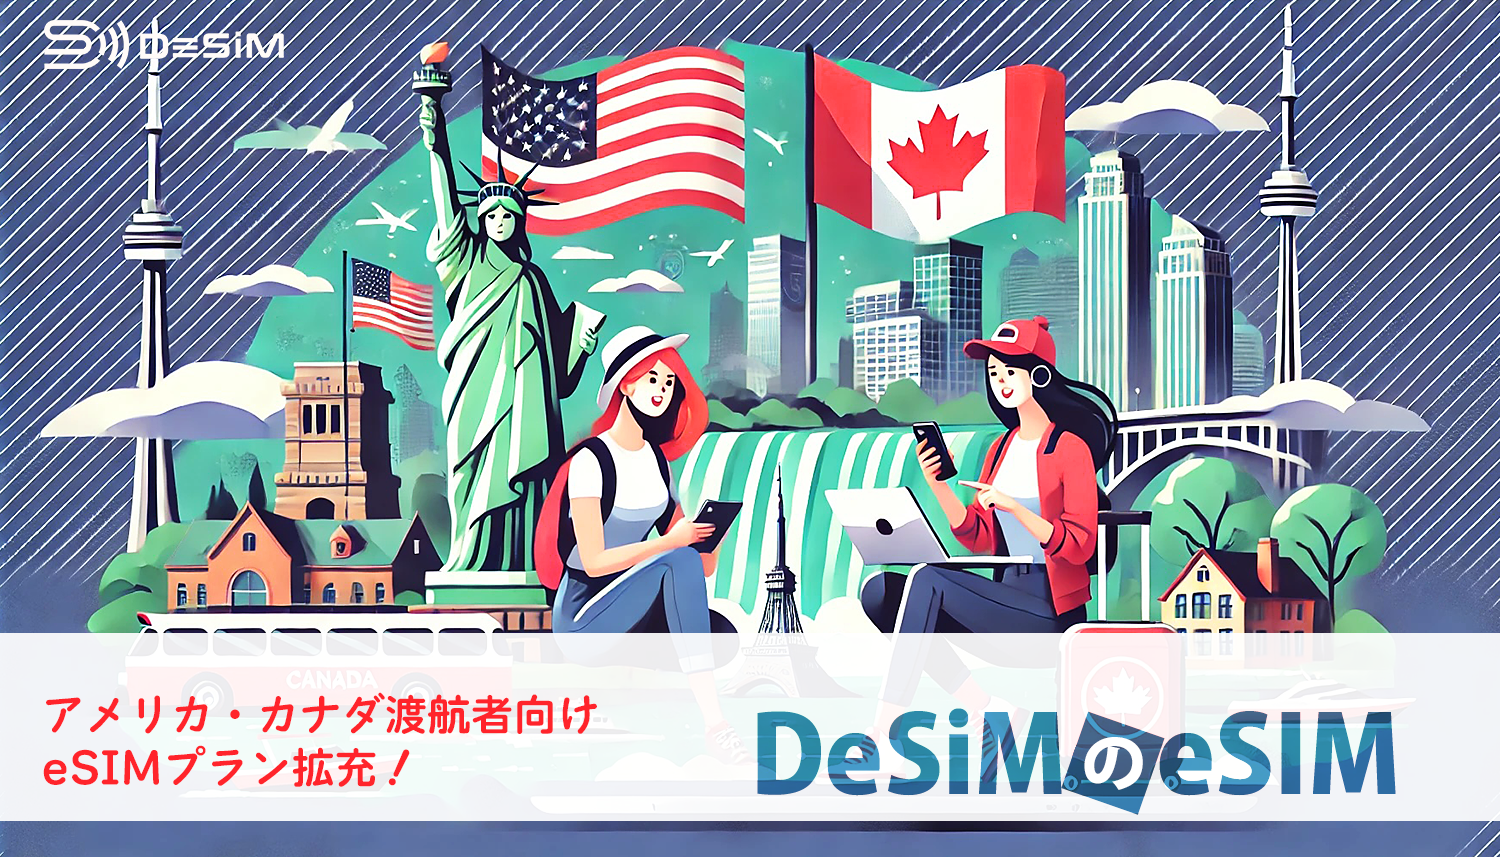 DeSiM の eSIM アメリカ・カナダプラン